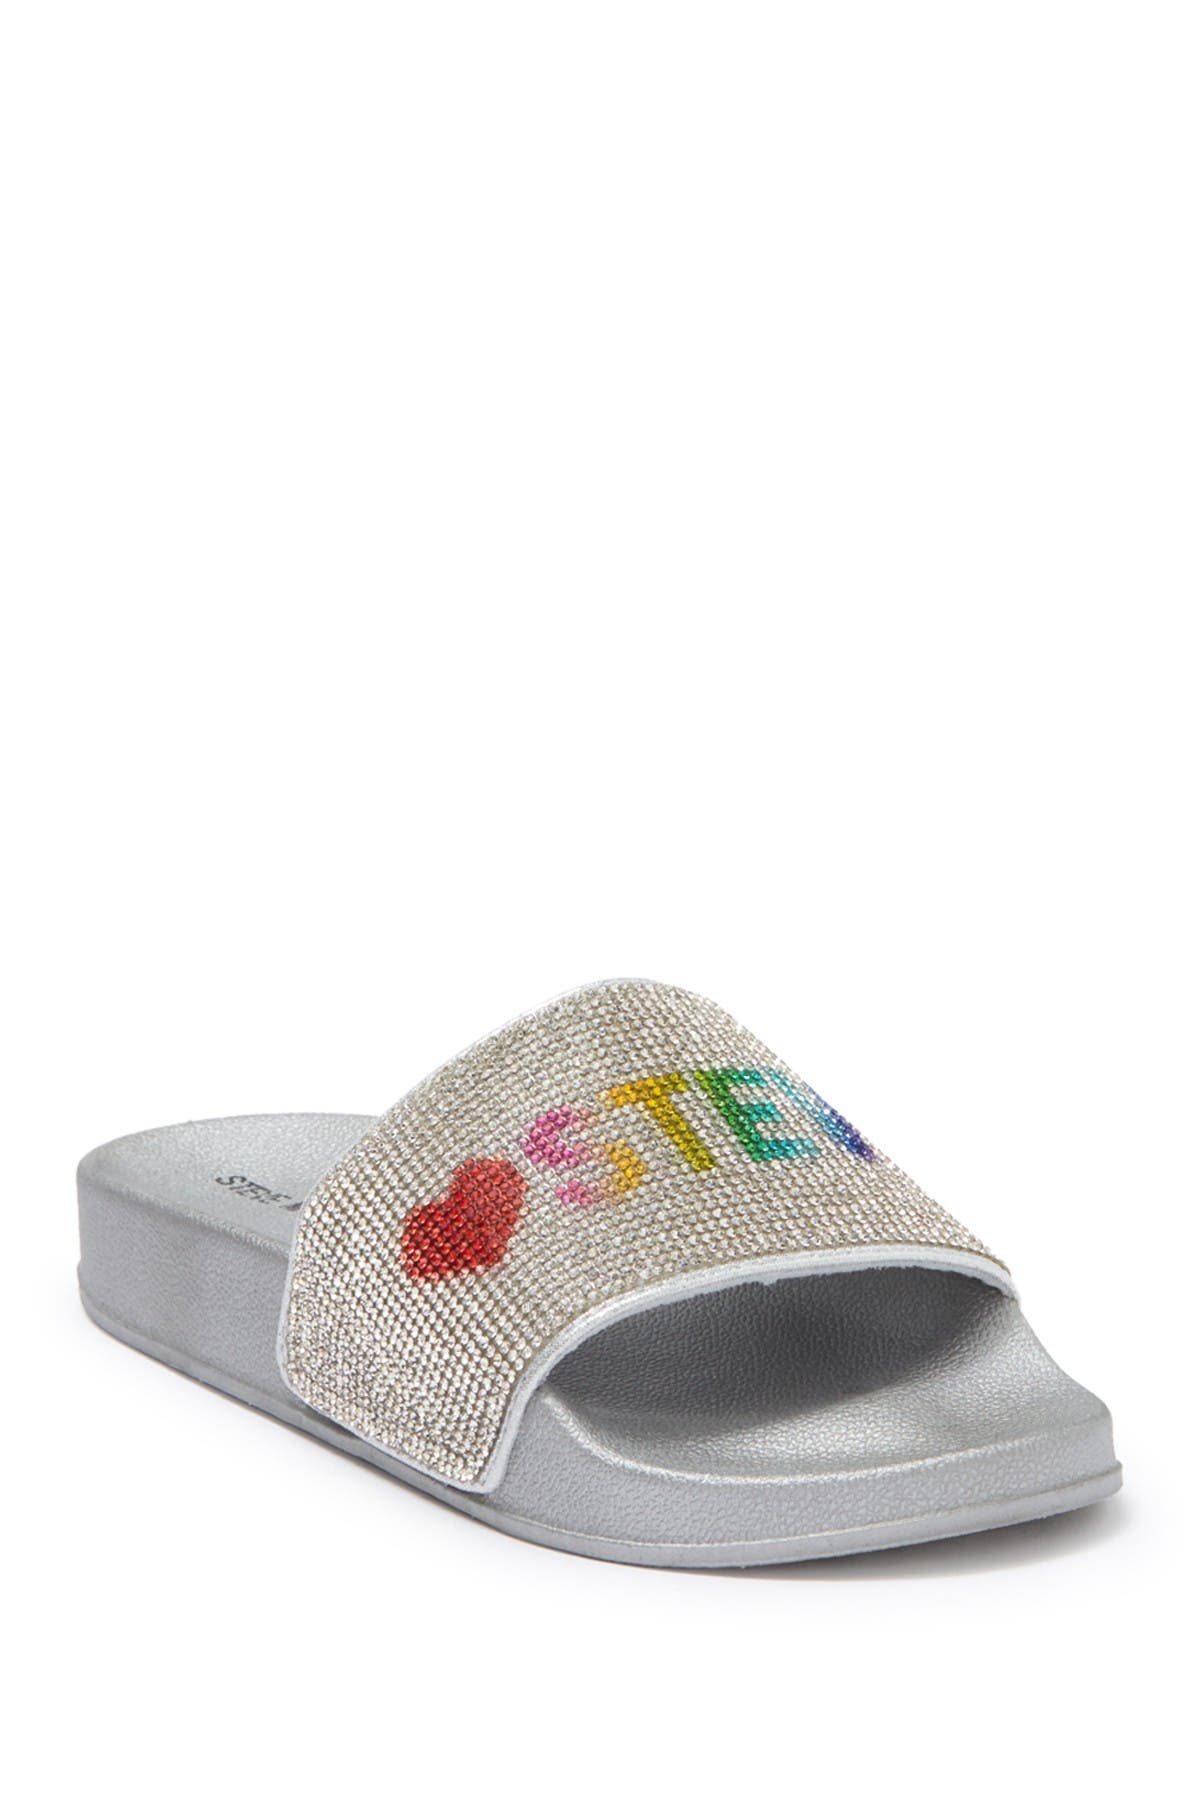 Steve Madden Kids' Best Embellished Slide Sandal In Silver